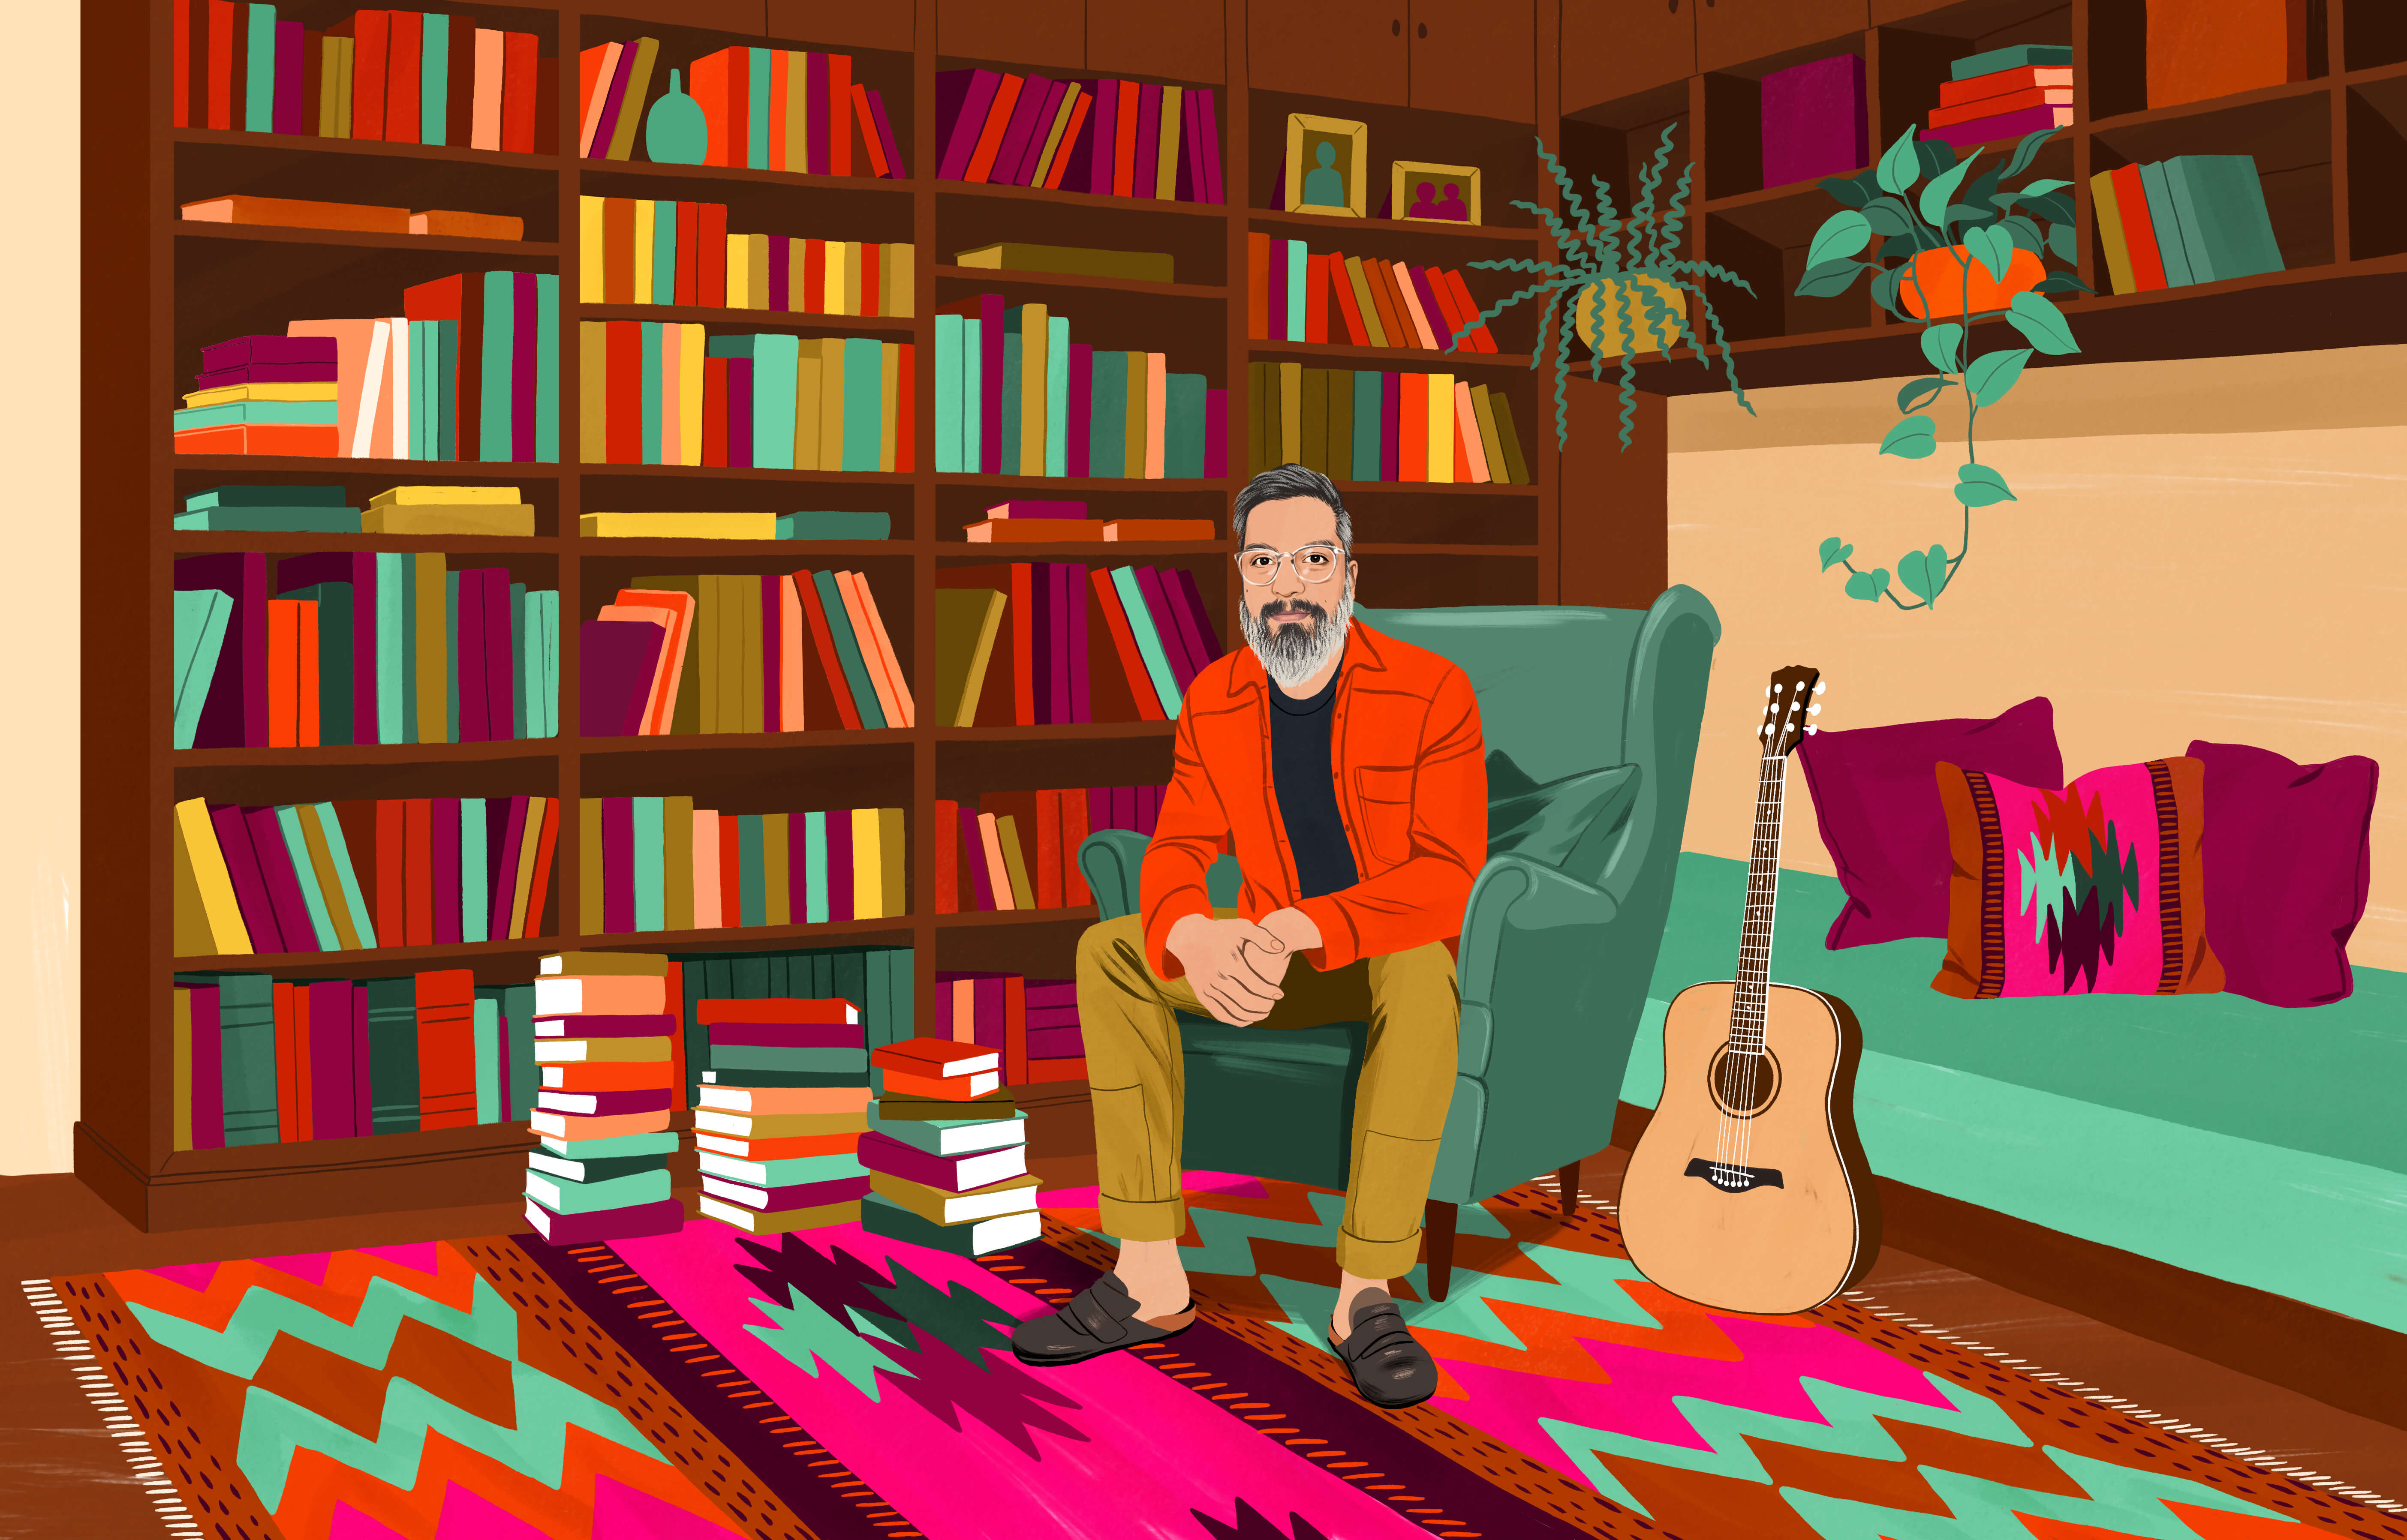 JP está sentado em uma poltrona, cercado por livros distribuídos em uma estante e em pilhas pelo chão, onde há também um tapete tradicional chileno com estampas coloridas. Há um violão próximo à poltrona.